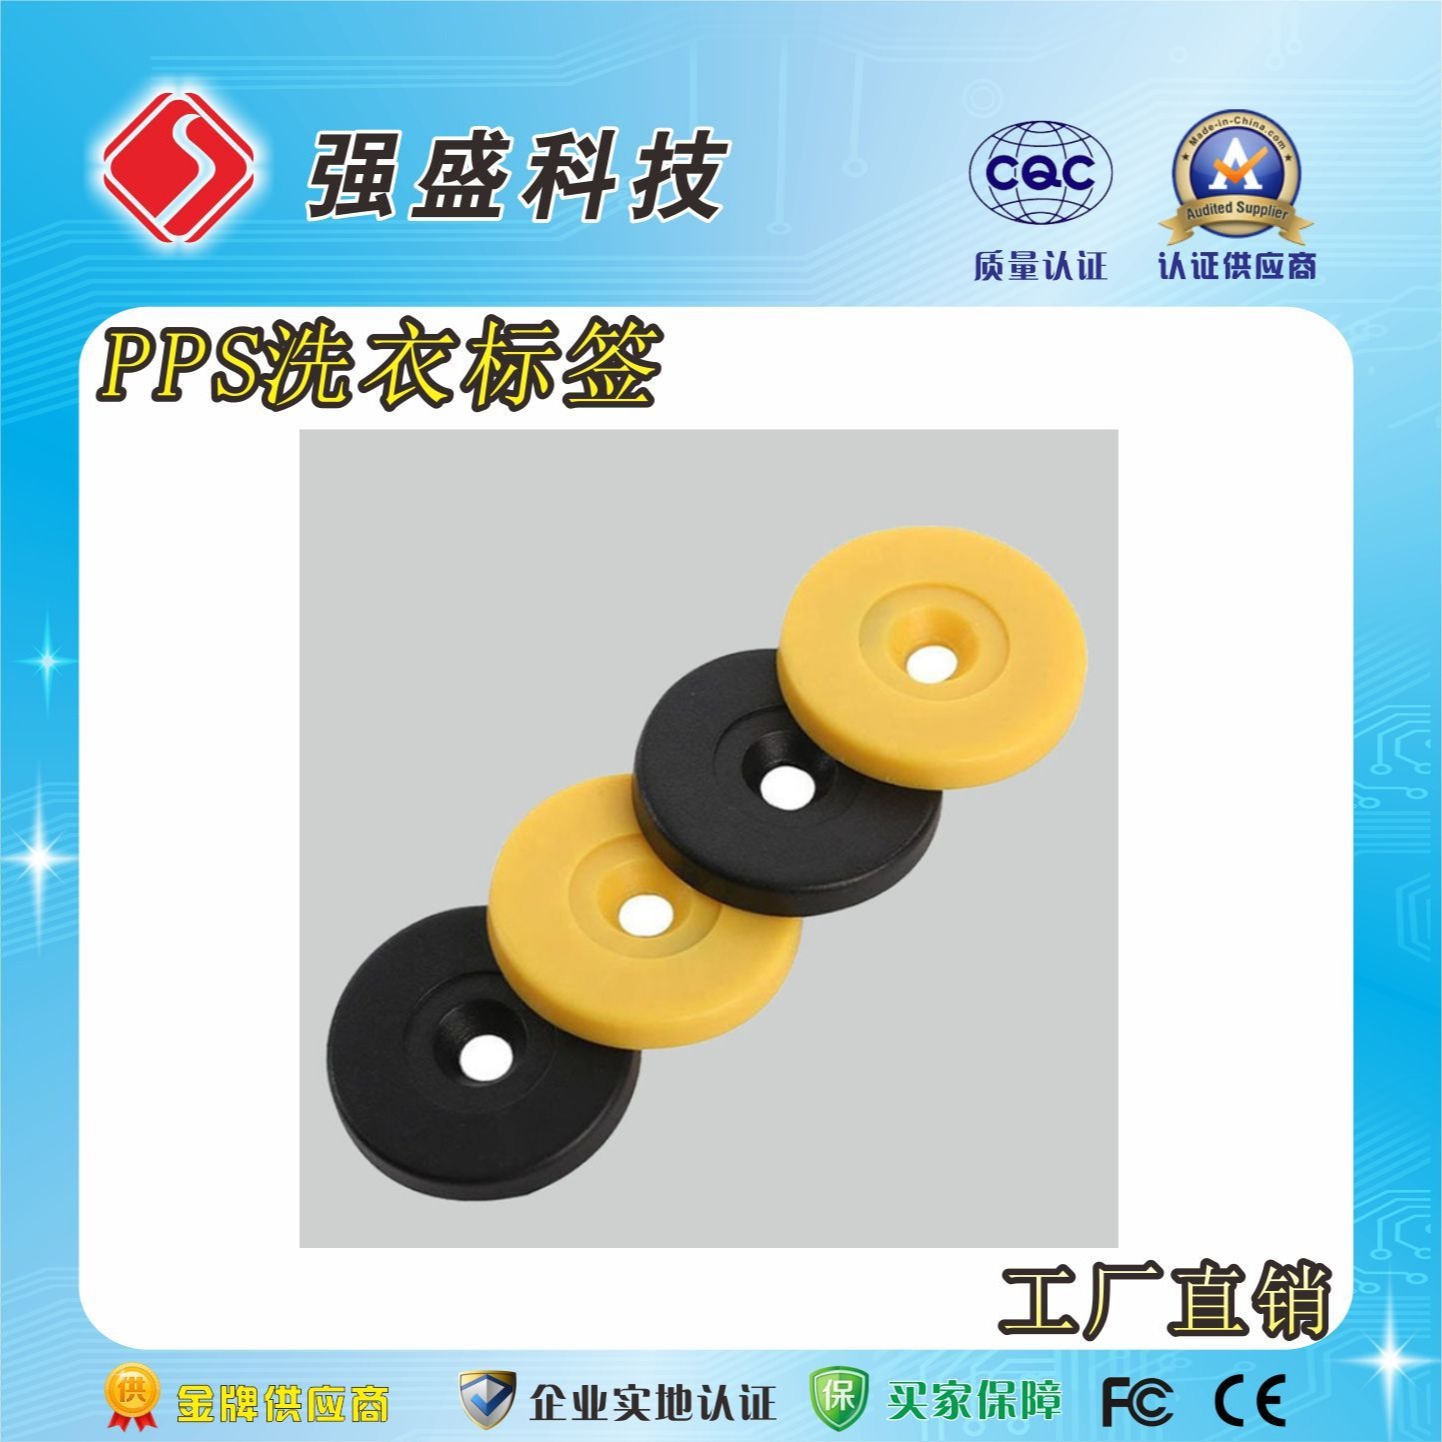 广州强盛公司RFID洗衣标签厂家、RFID洗衣扭扣价格——洗衣标签的功能